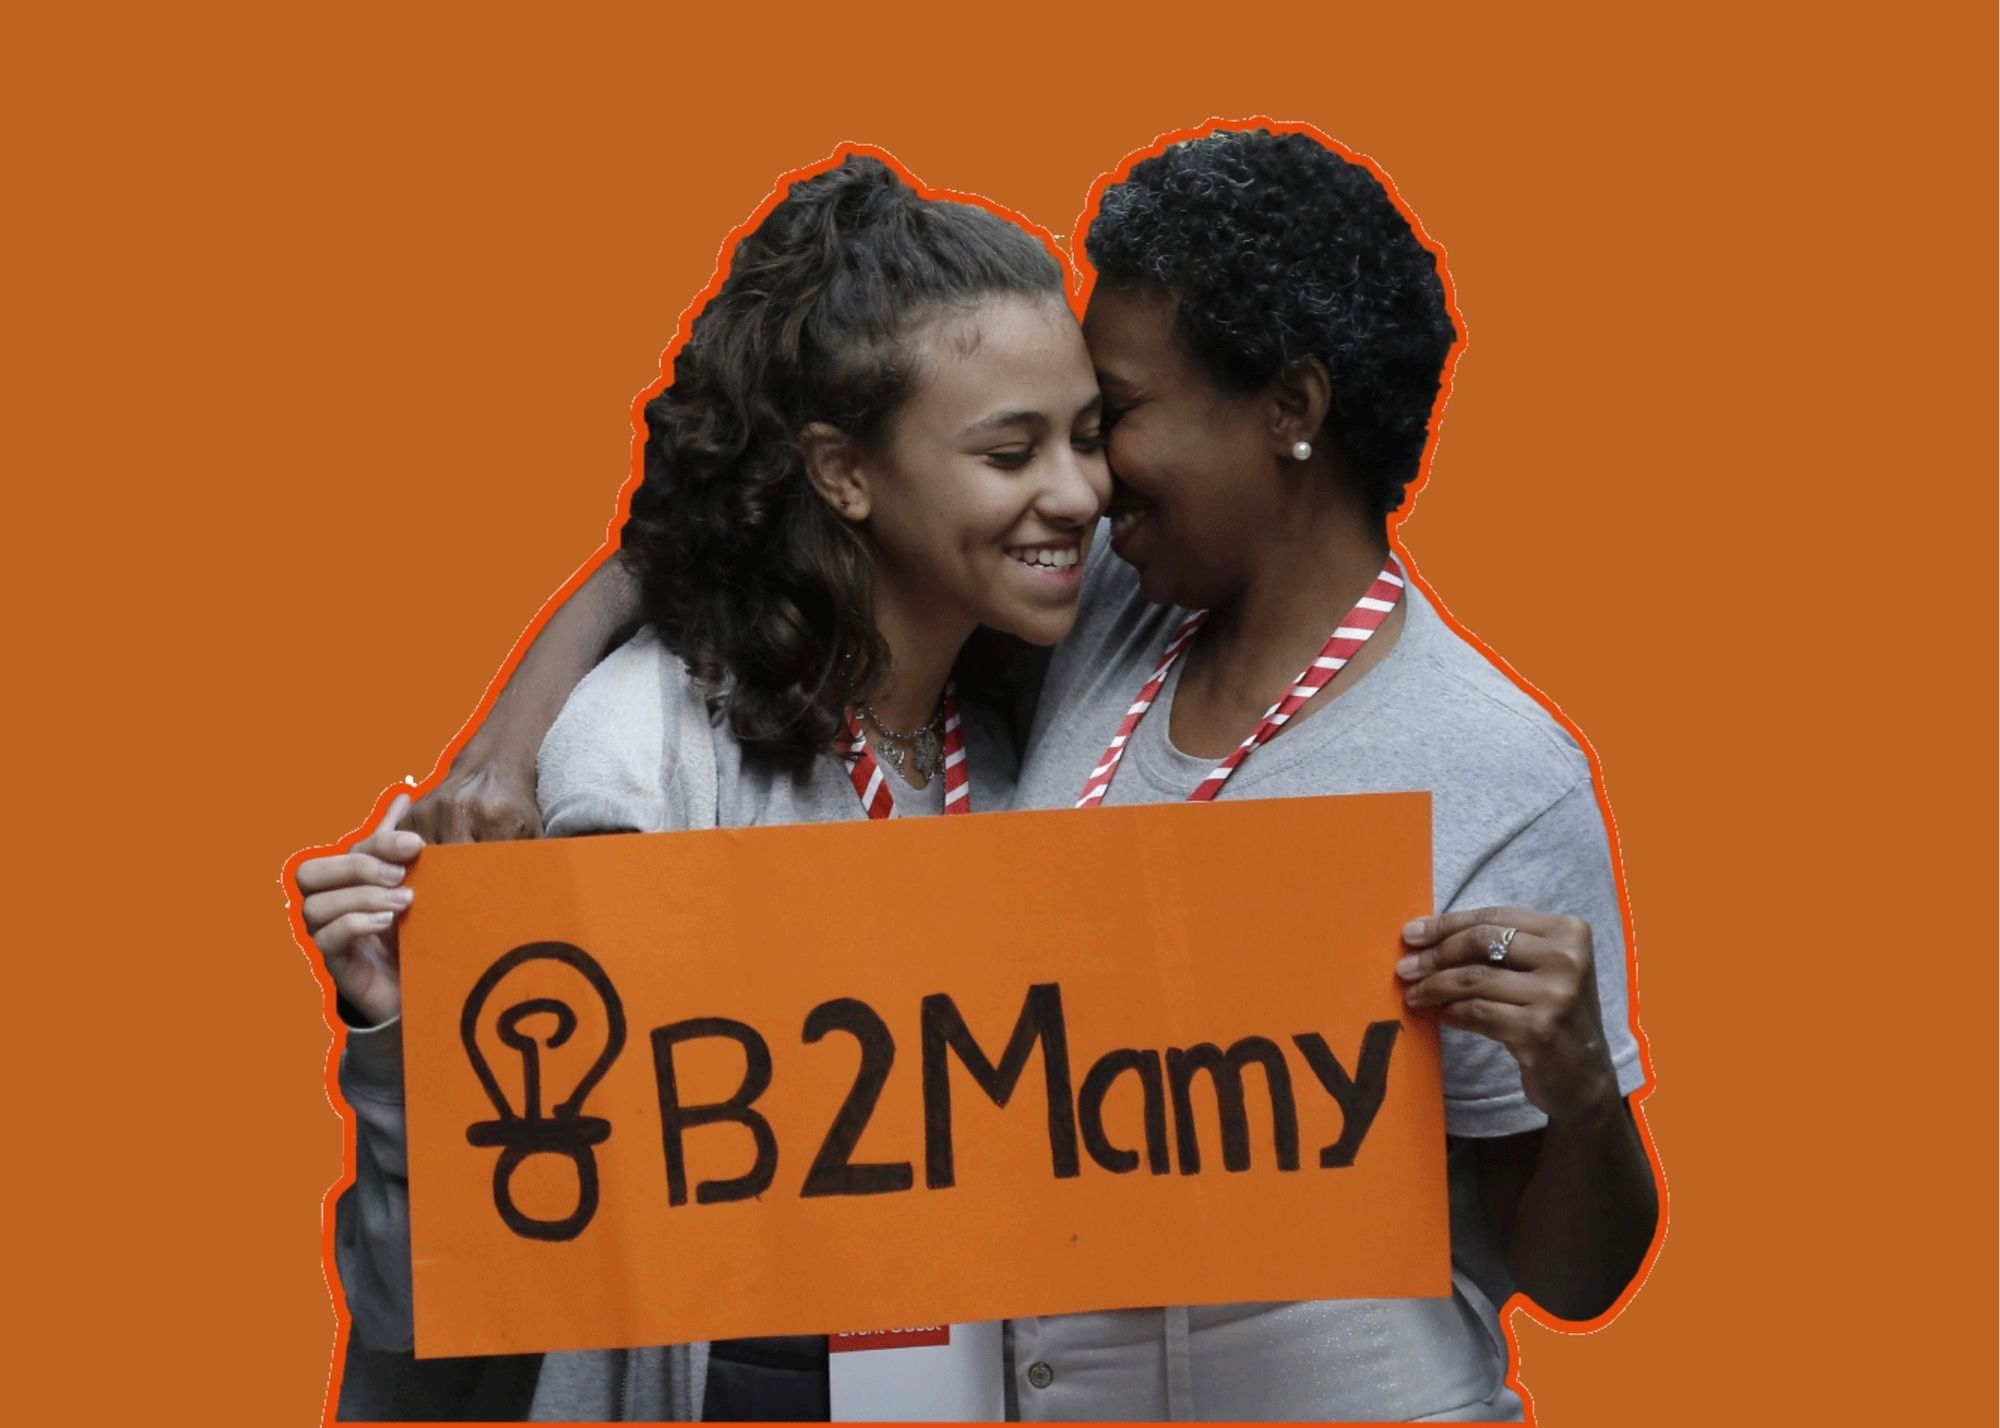 B2Mamy promove segunda edição do “Logoff das Mães” e convida empresas a aderirem ao movimento